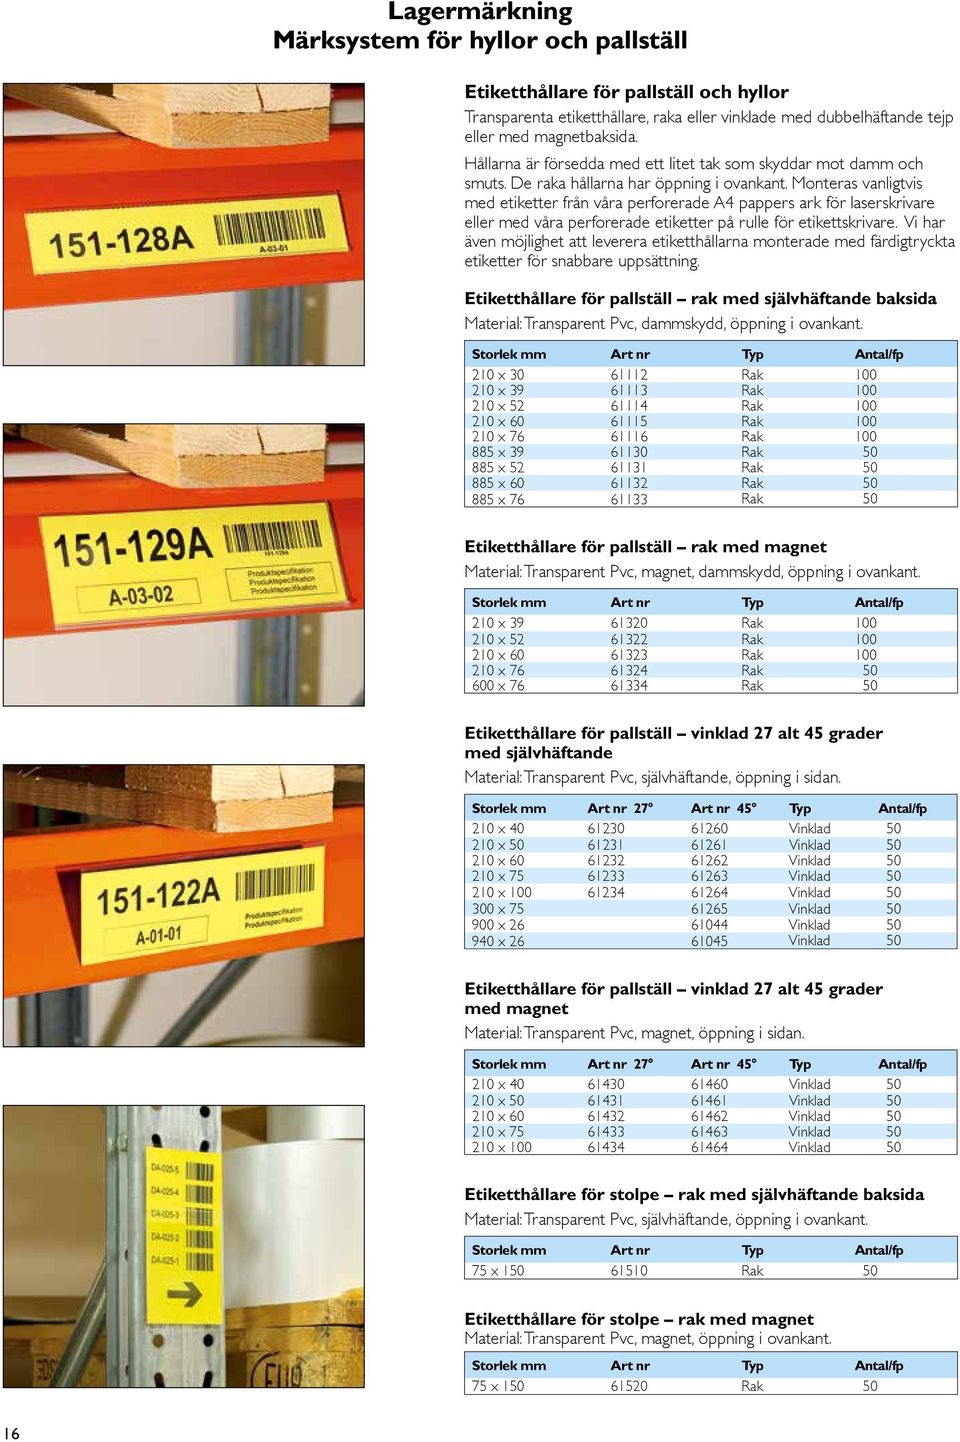 Monteras vanligtvis med etiketter från våra perforerade A4 pappers ark för laserskrivare eller med våra perforerade etiketter på rulle för etikettskrivare.